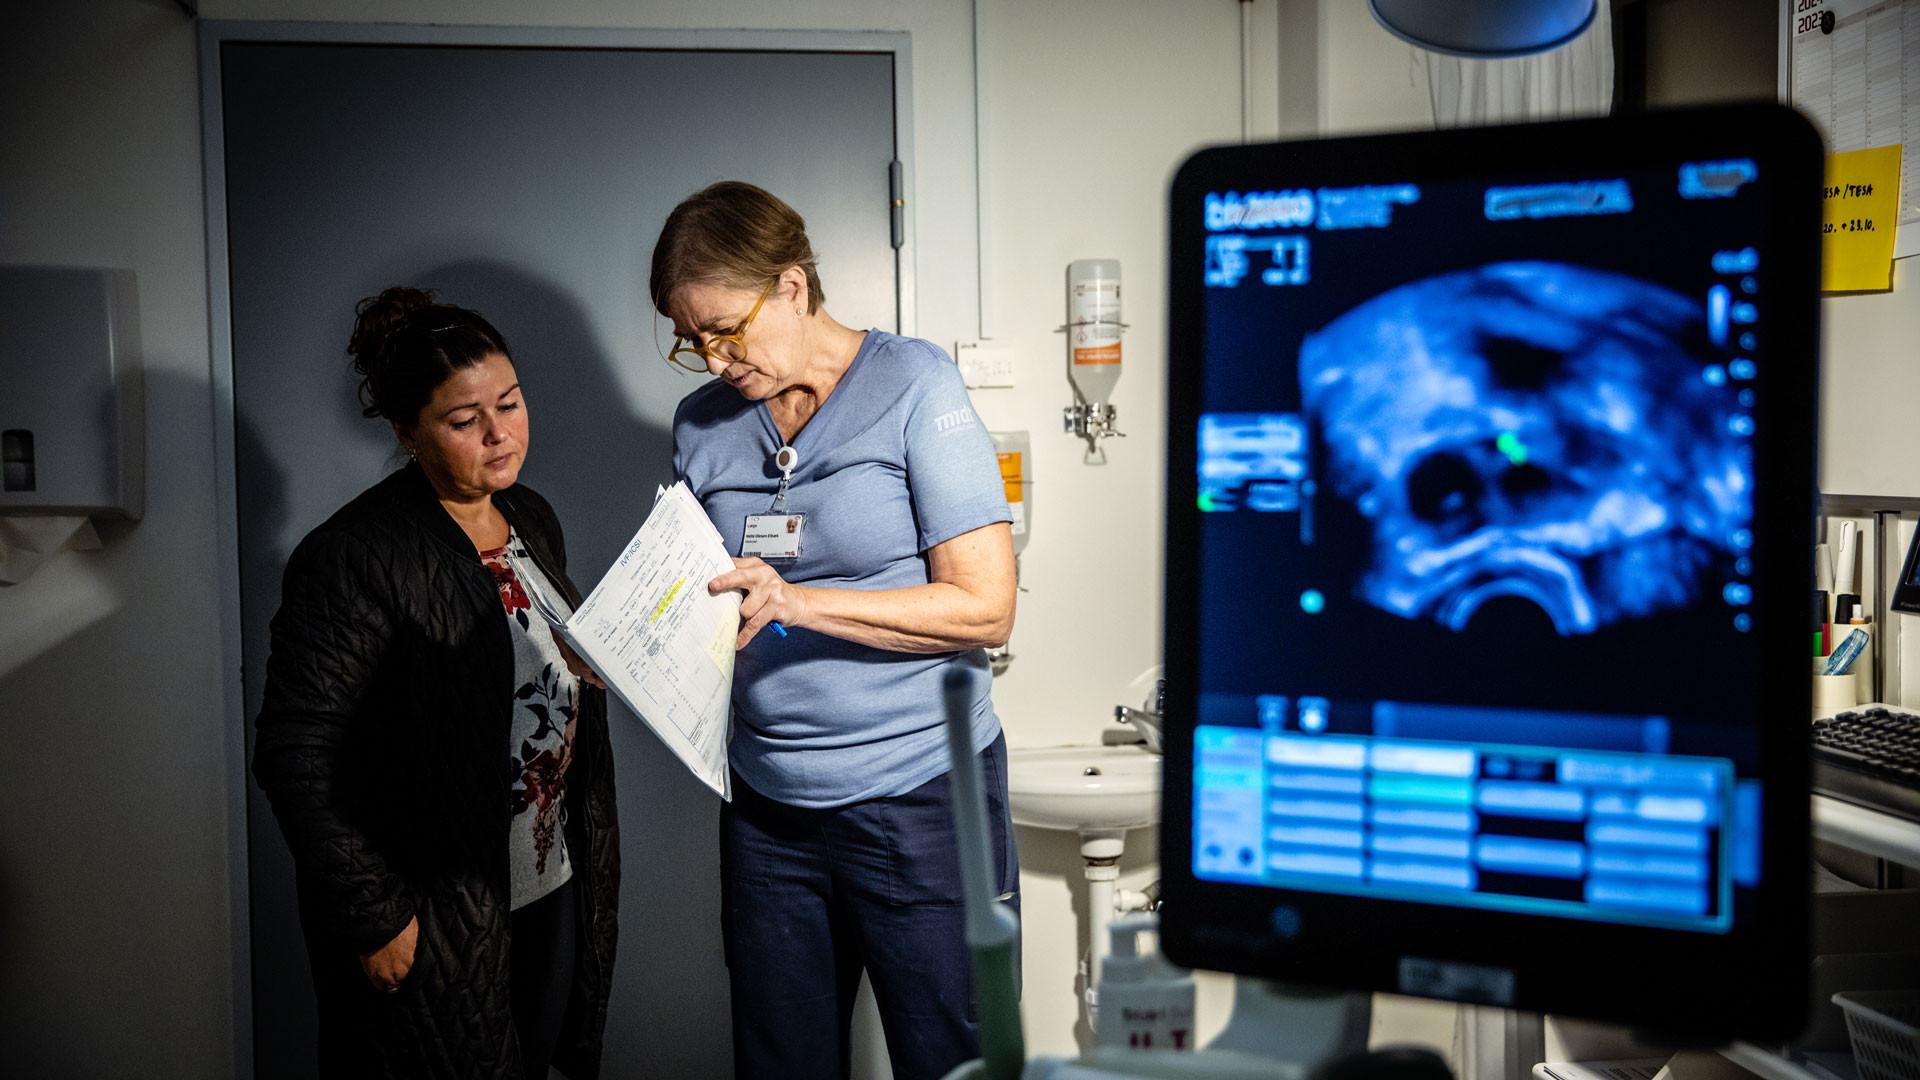 Helle Olesen Elbæk forklarer en patient, hvad ultralydsskanningen har vist, og hvad der skal ske fremadrettet. Foto: Jesper Balleby.